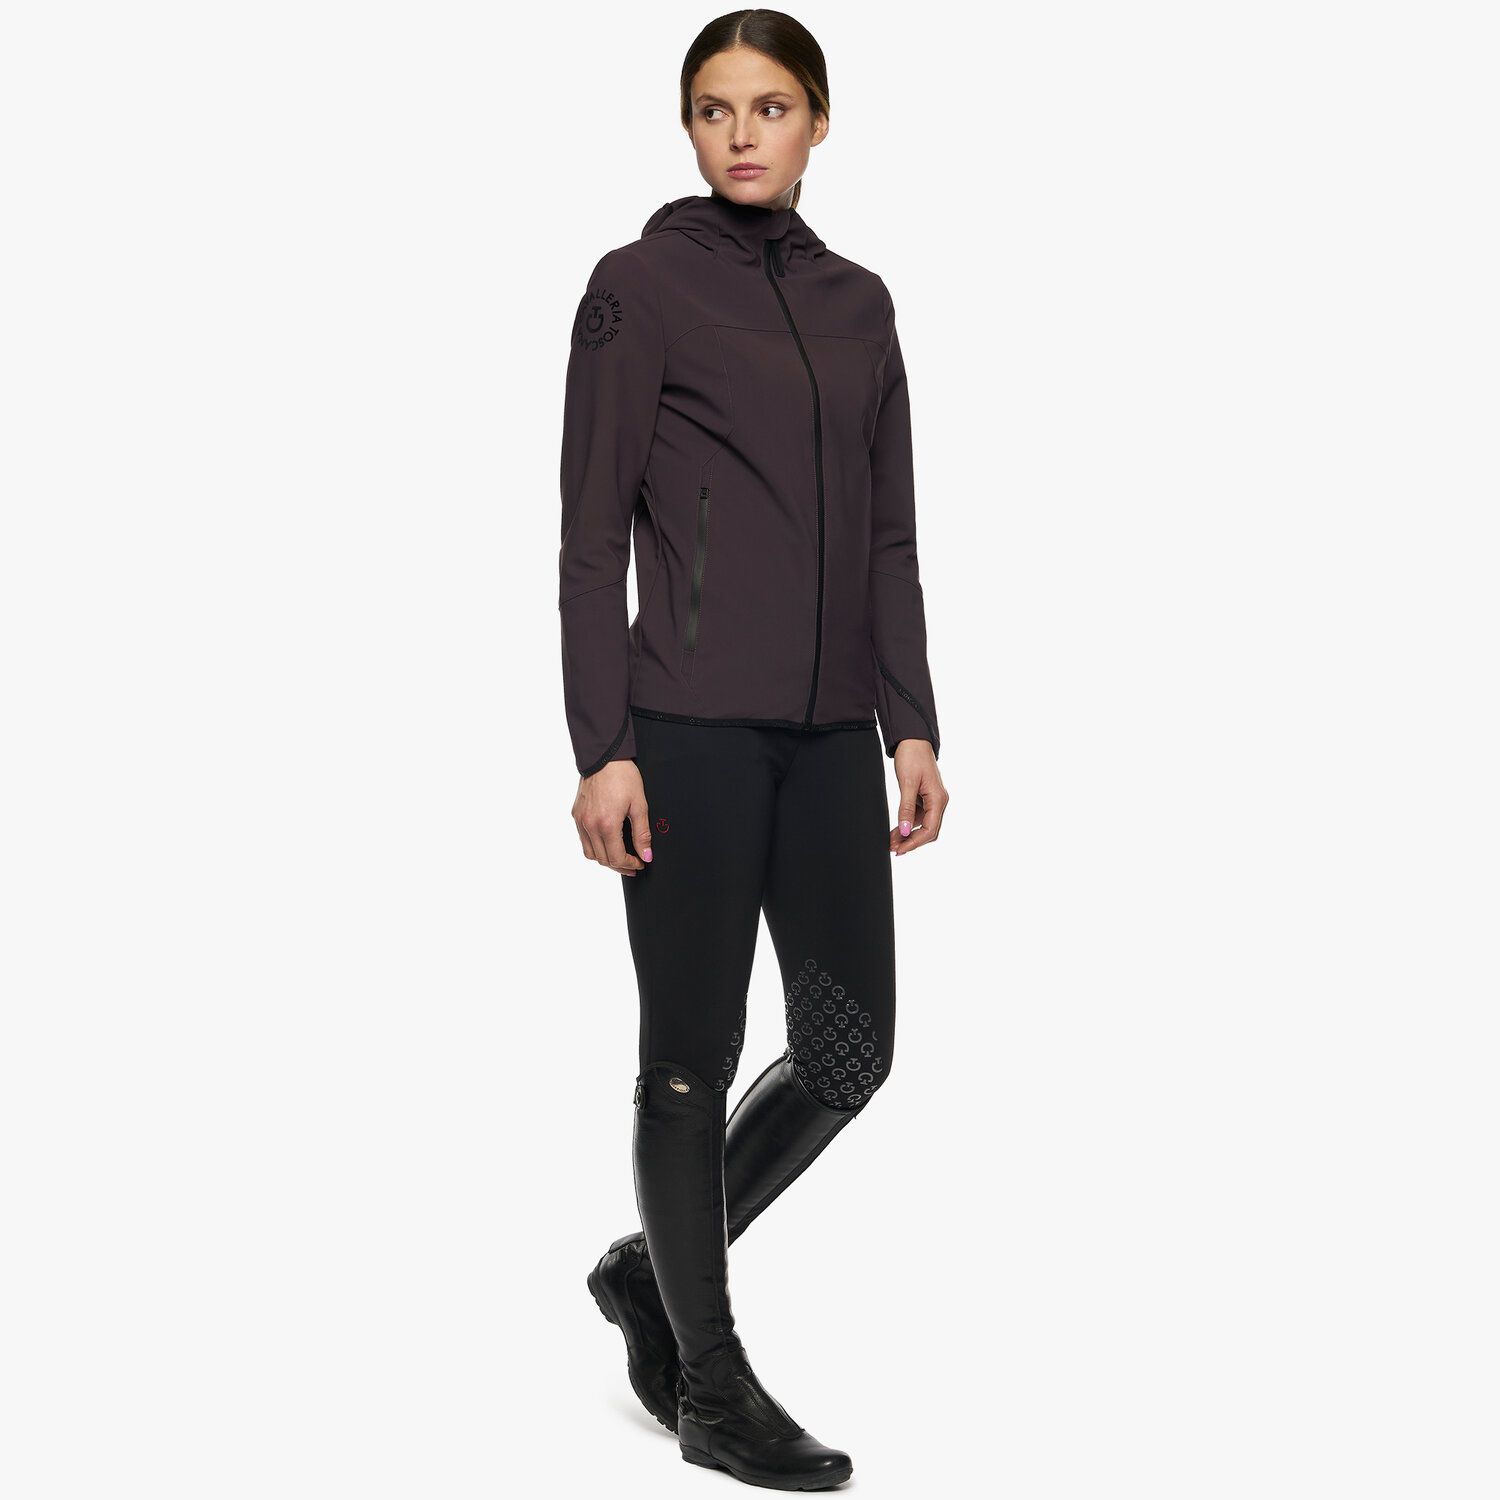 Cavalleria Toscana Women’s softshell jacket DARK PURPLE-4